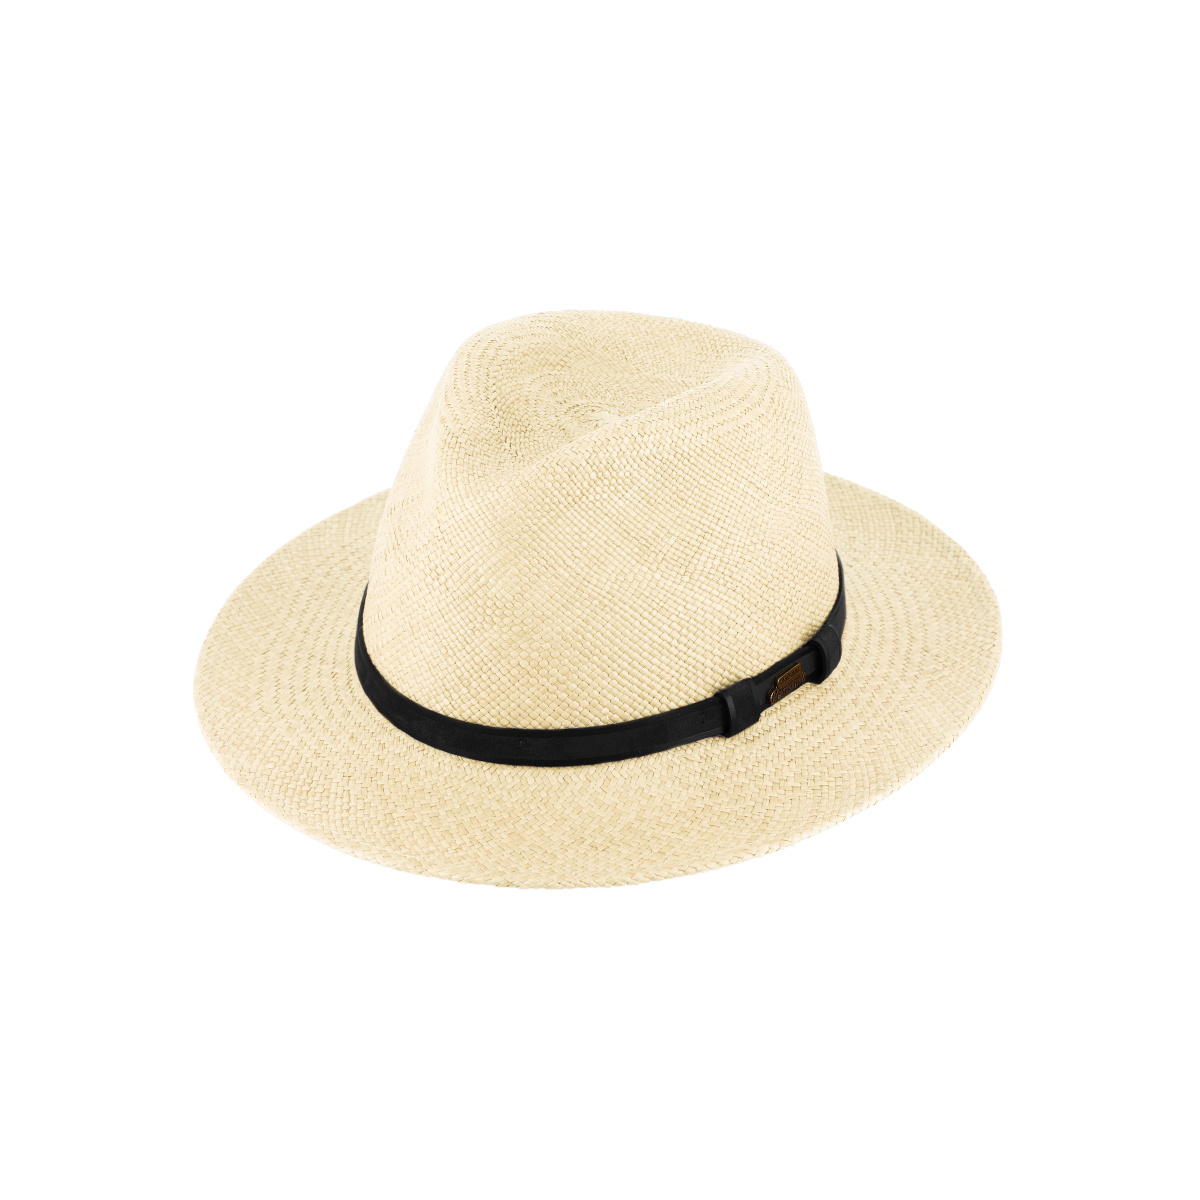 Panama hat - Buy panama hat Ecuador